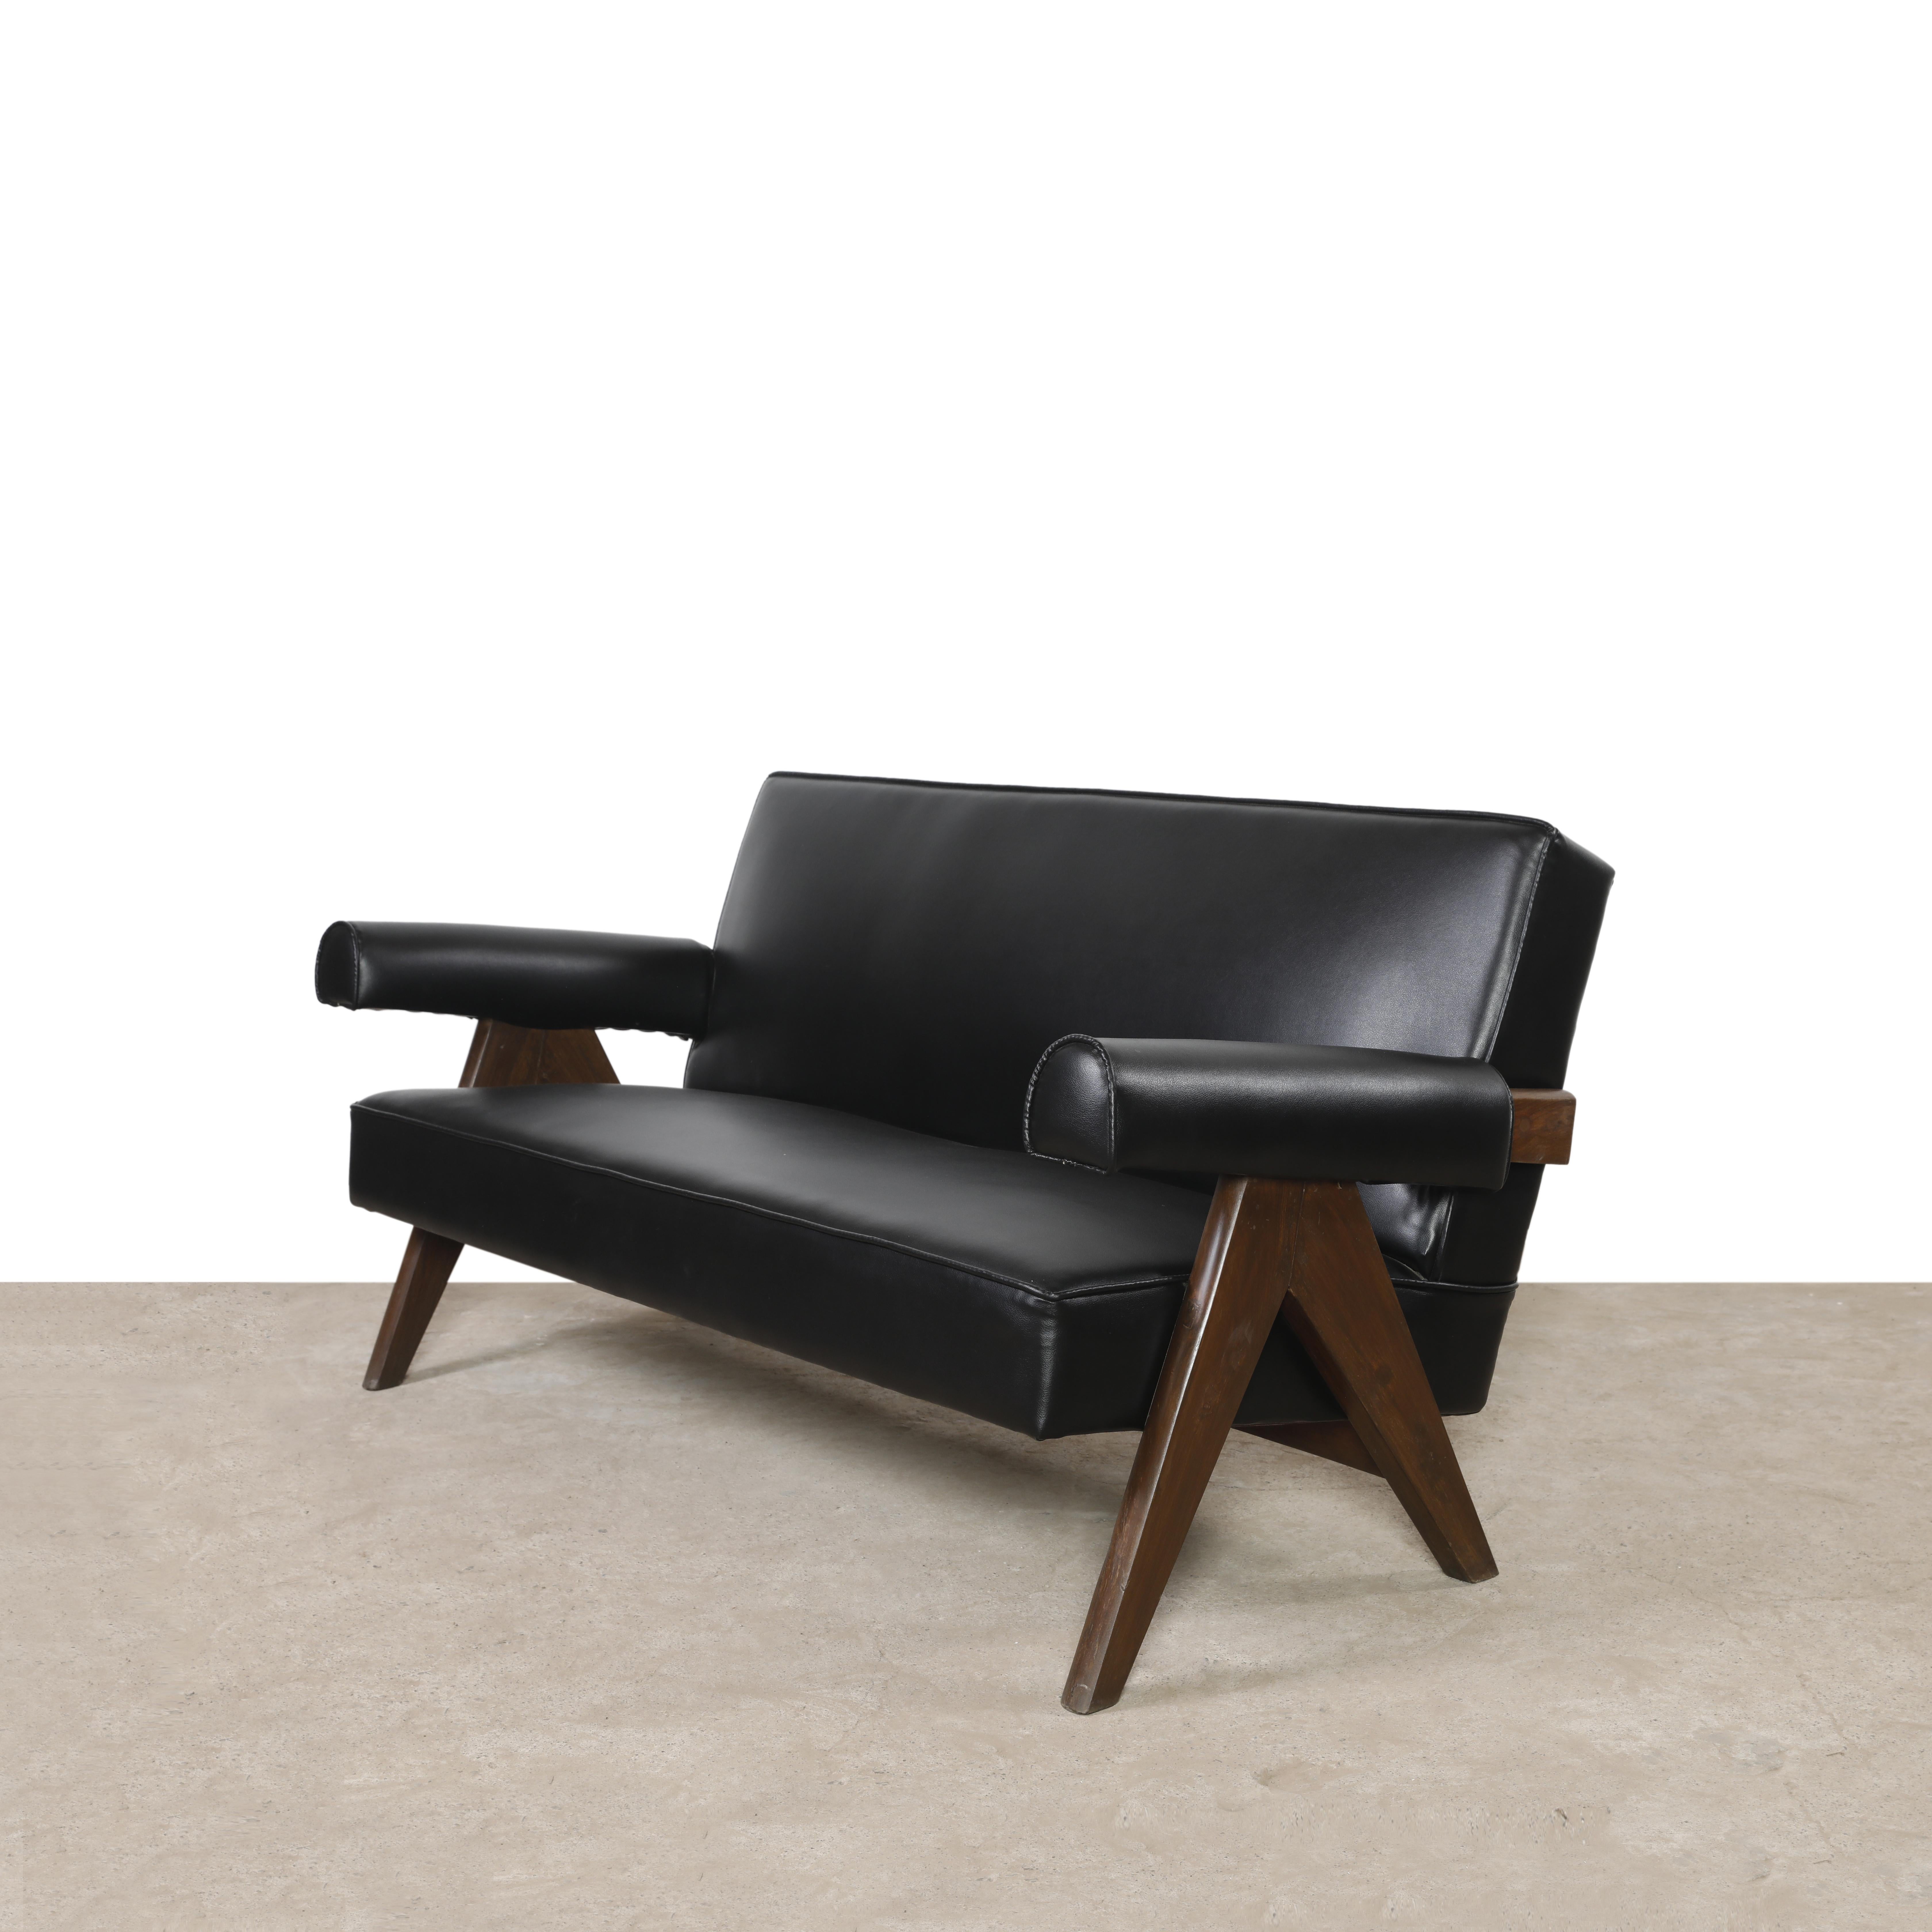 Dieses Sofa ist ein fantastisches Stück; endlich ist es ikonisch. Es ist roh in seiner Einfachheit, nicht zu viel und doch fehlt nichts. Wir haben auch ein unrestauriertes Set mit zwei Sesseln. Wir können jede Art von Polstermöbel in jeder Farbe und